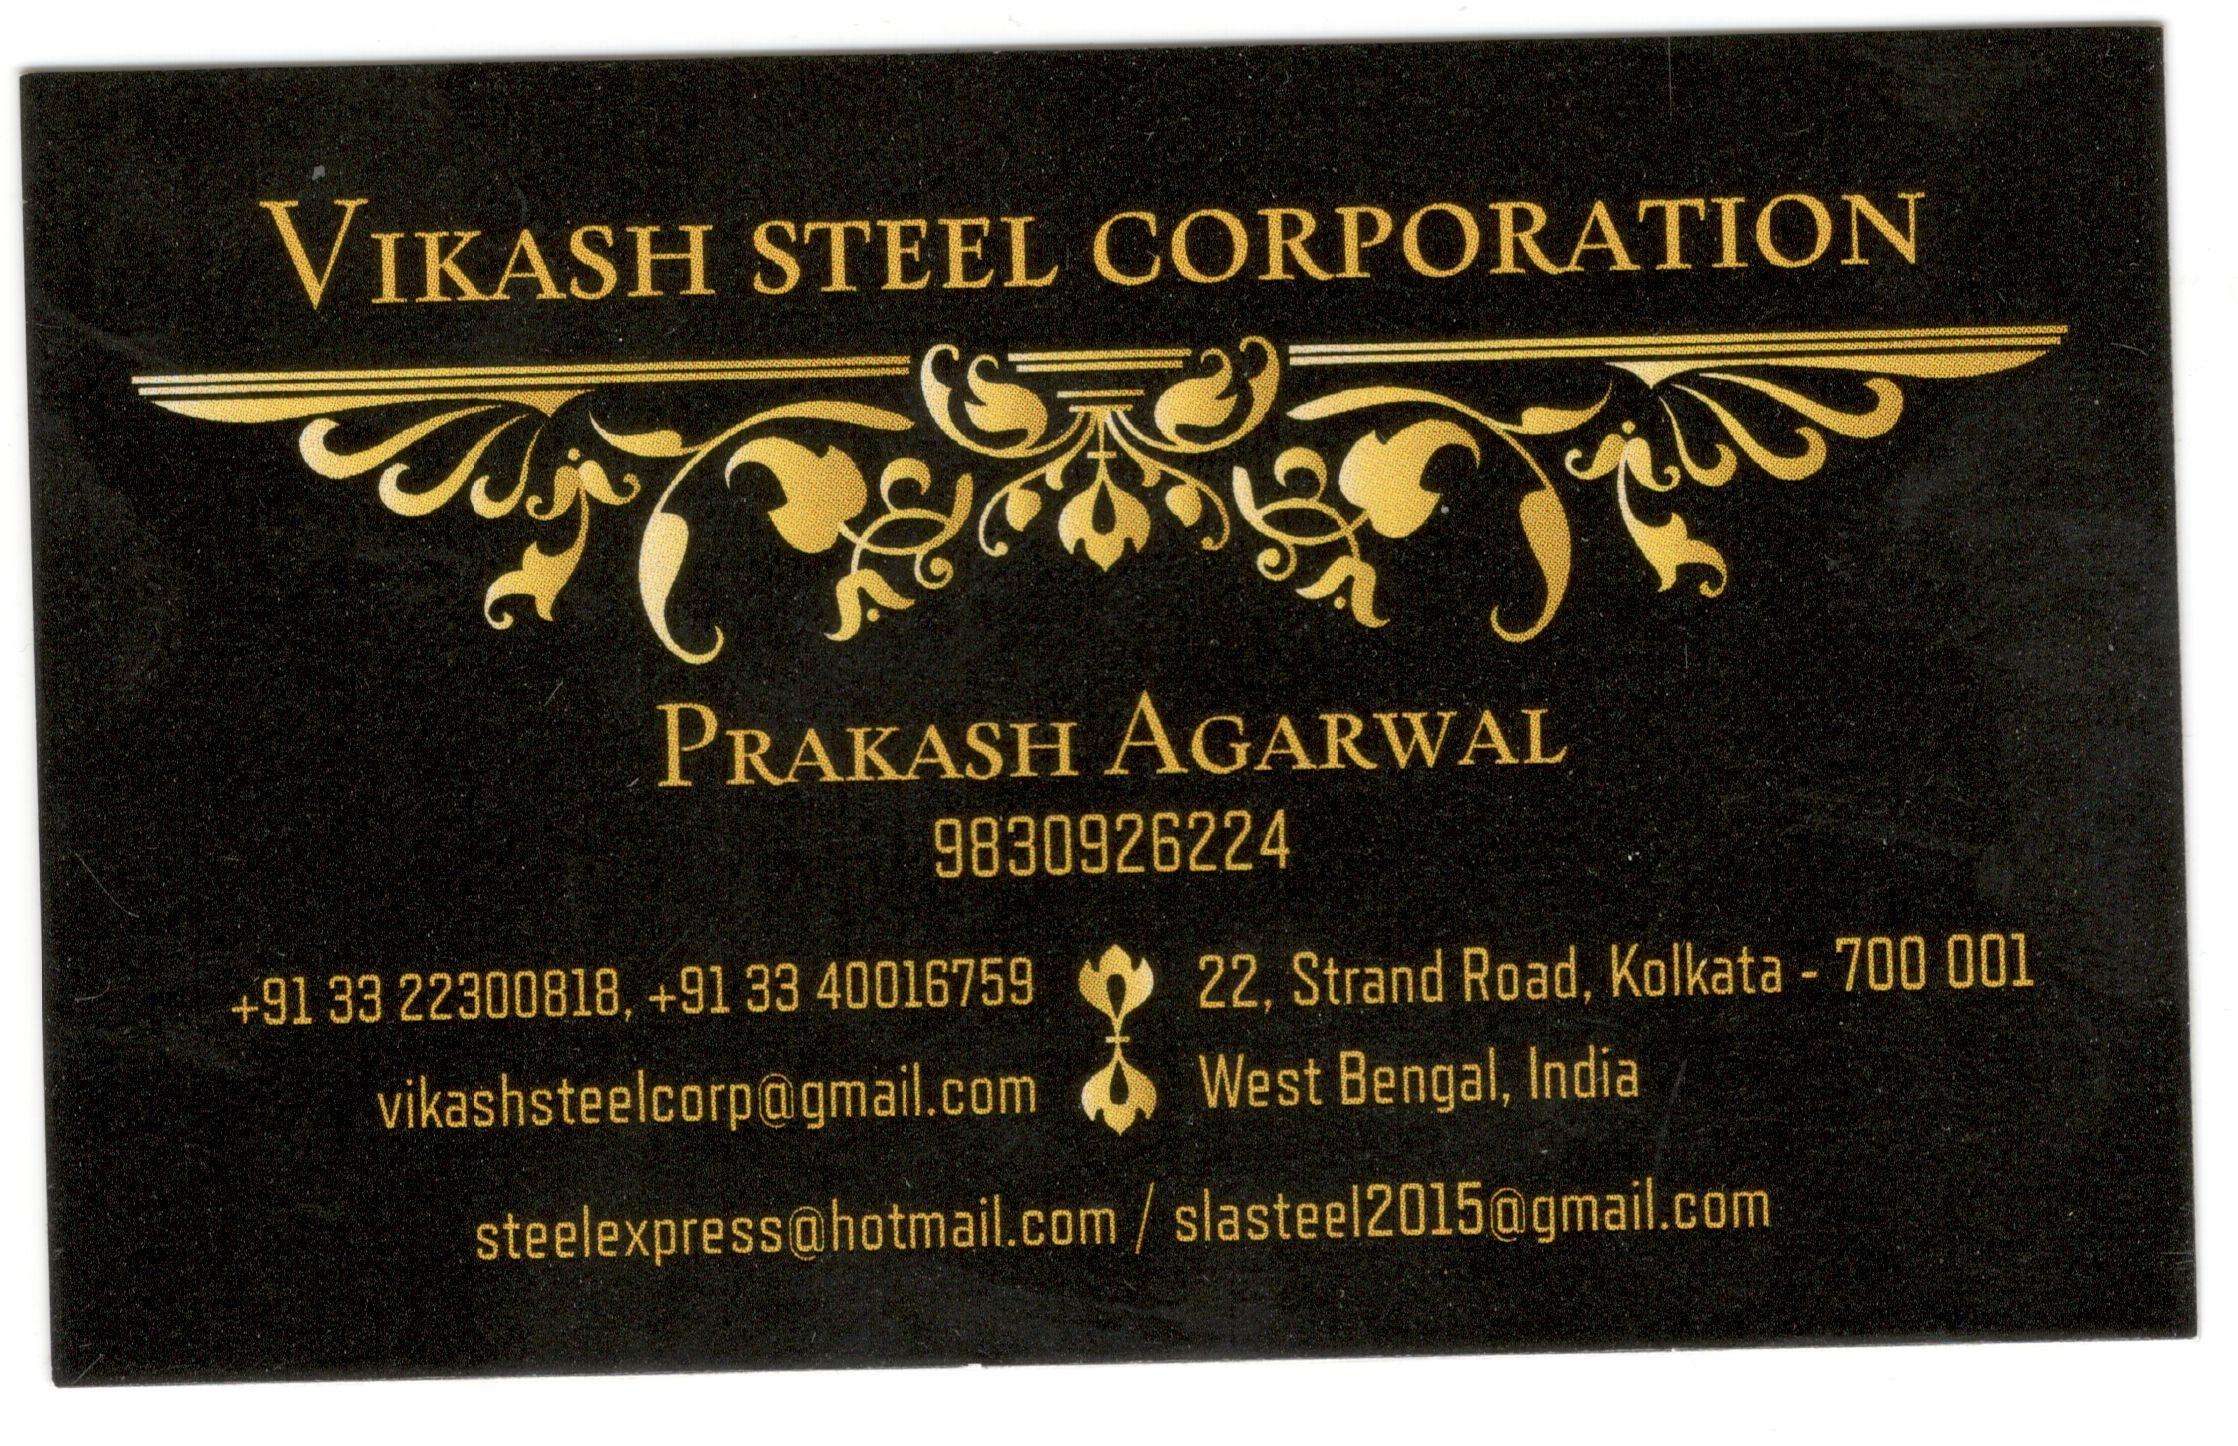 Vikash Steel Corporation